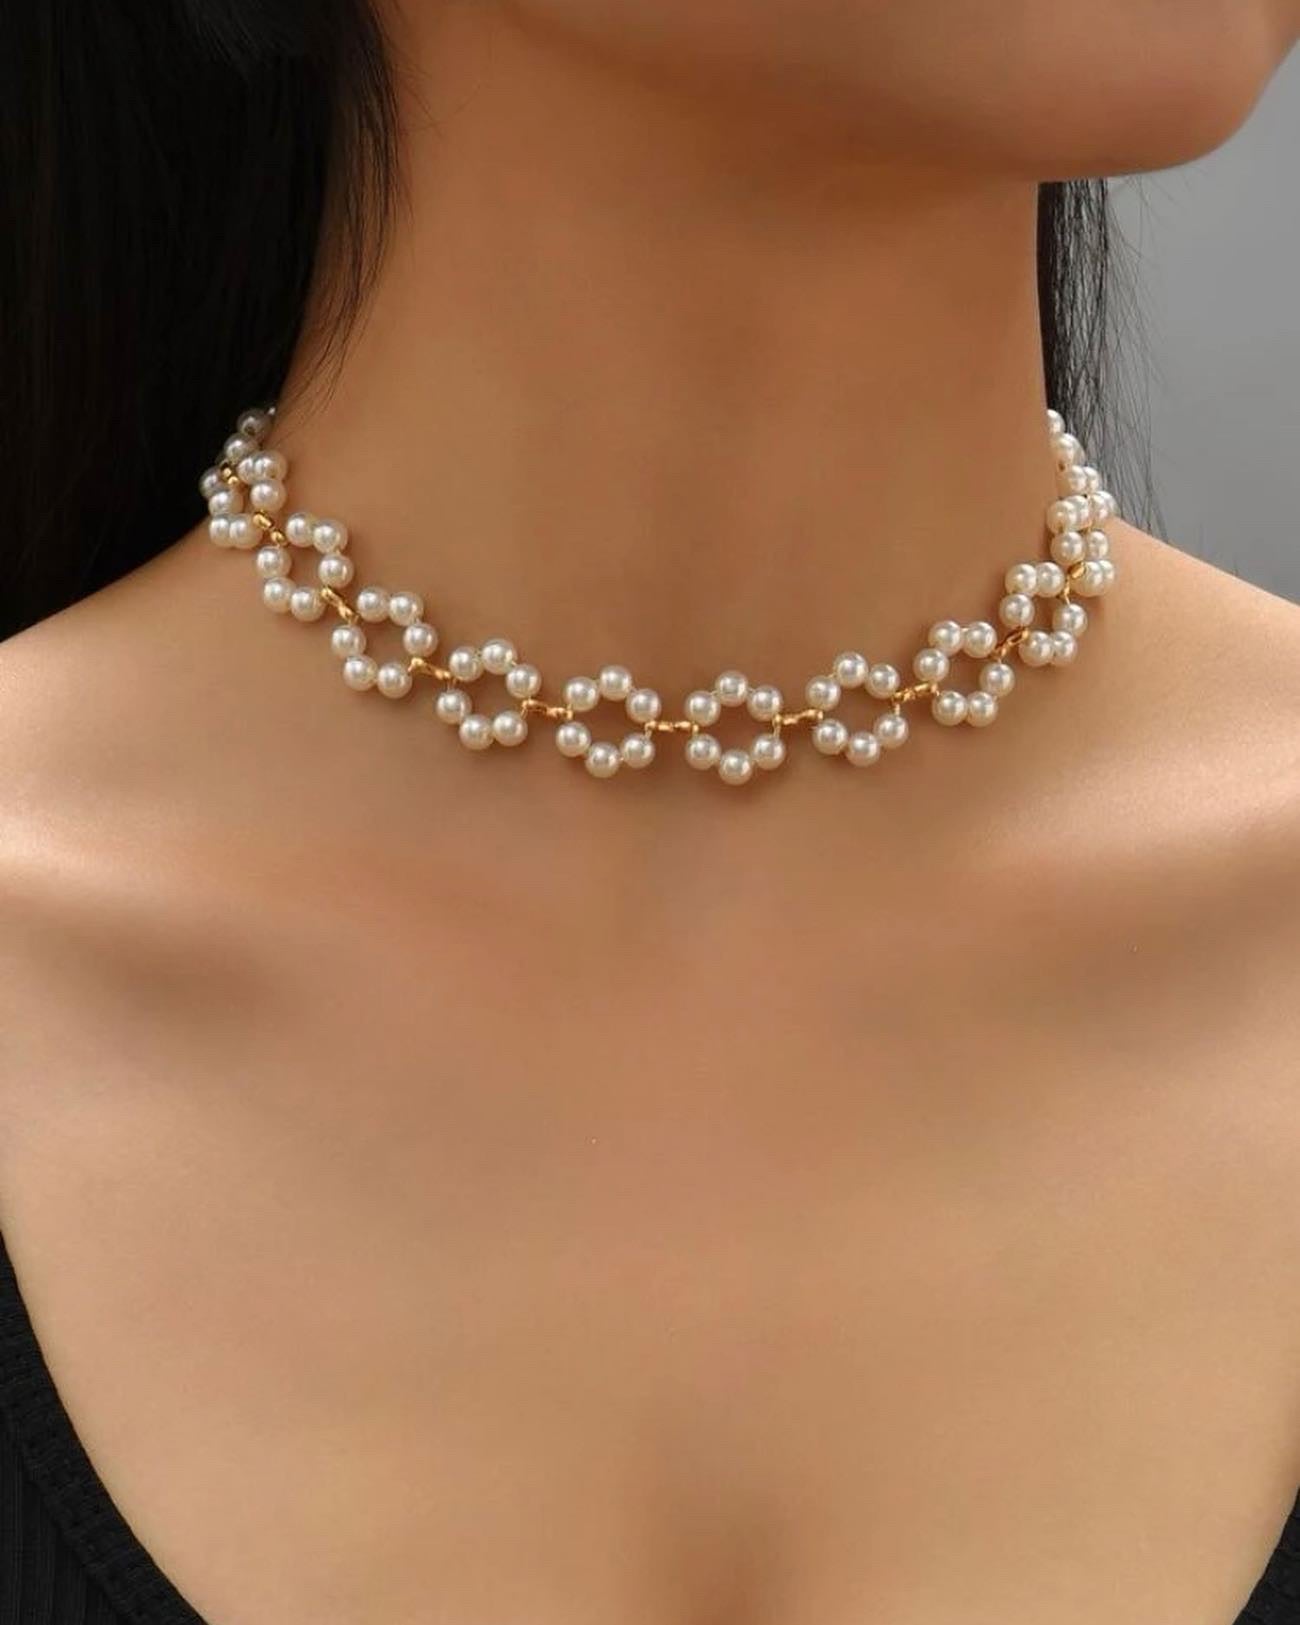 Handmade flower 🌸 necklace for women